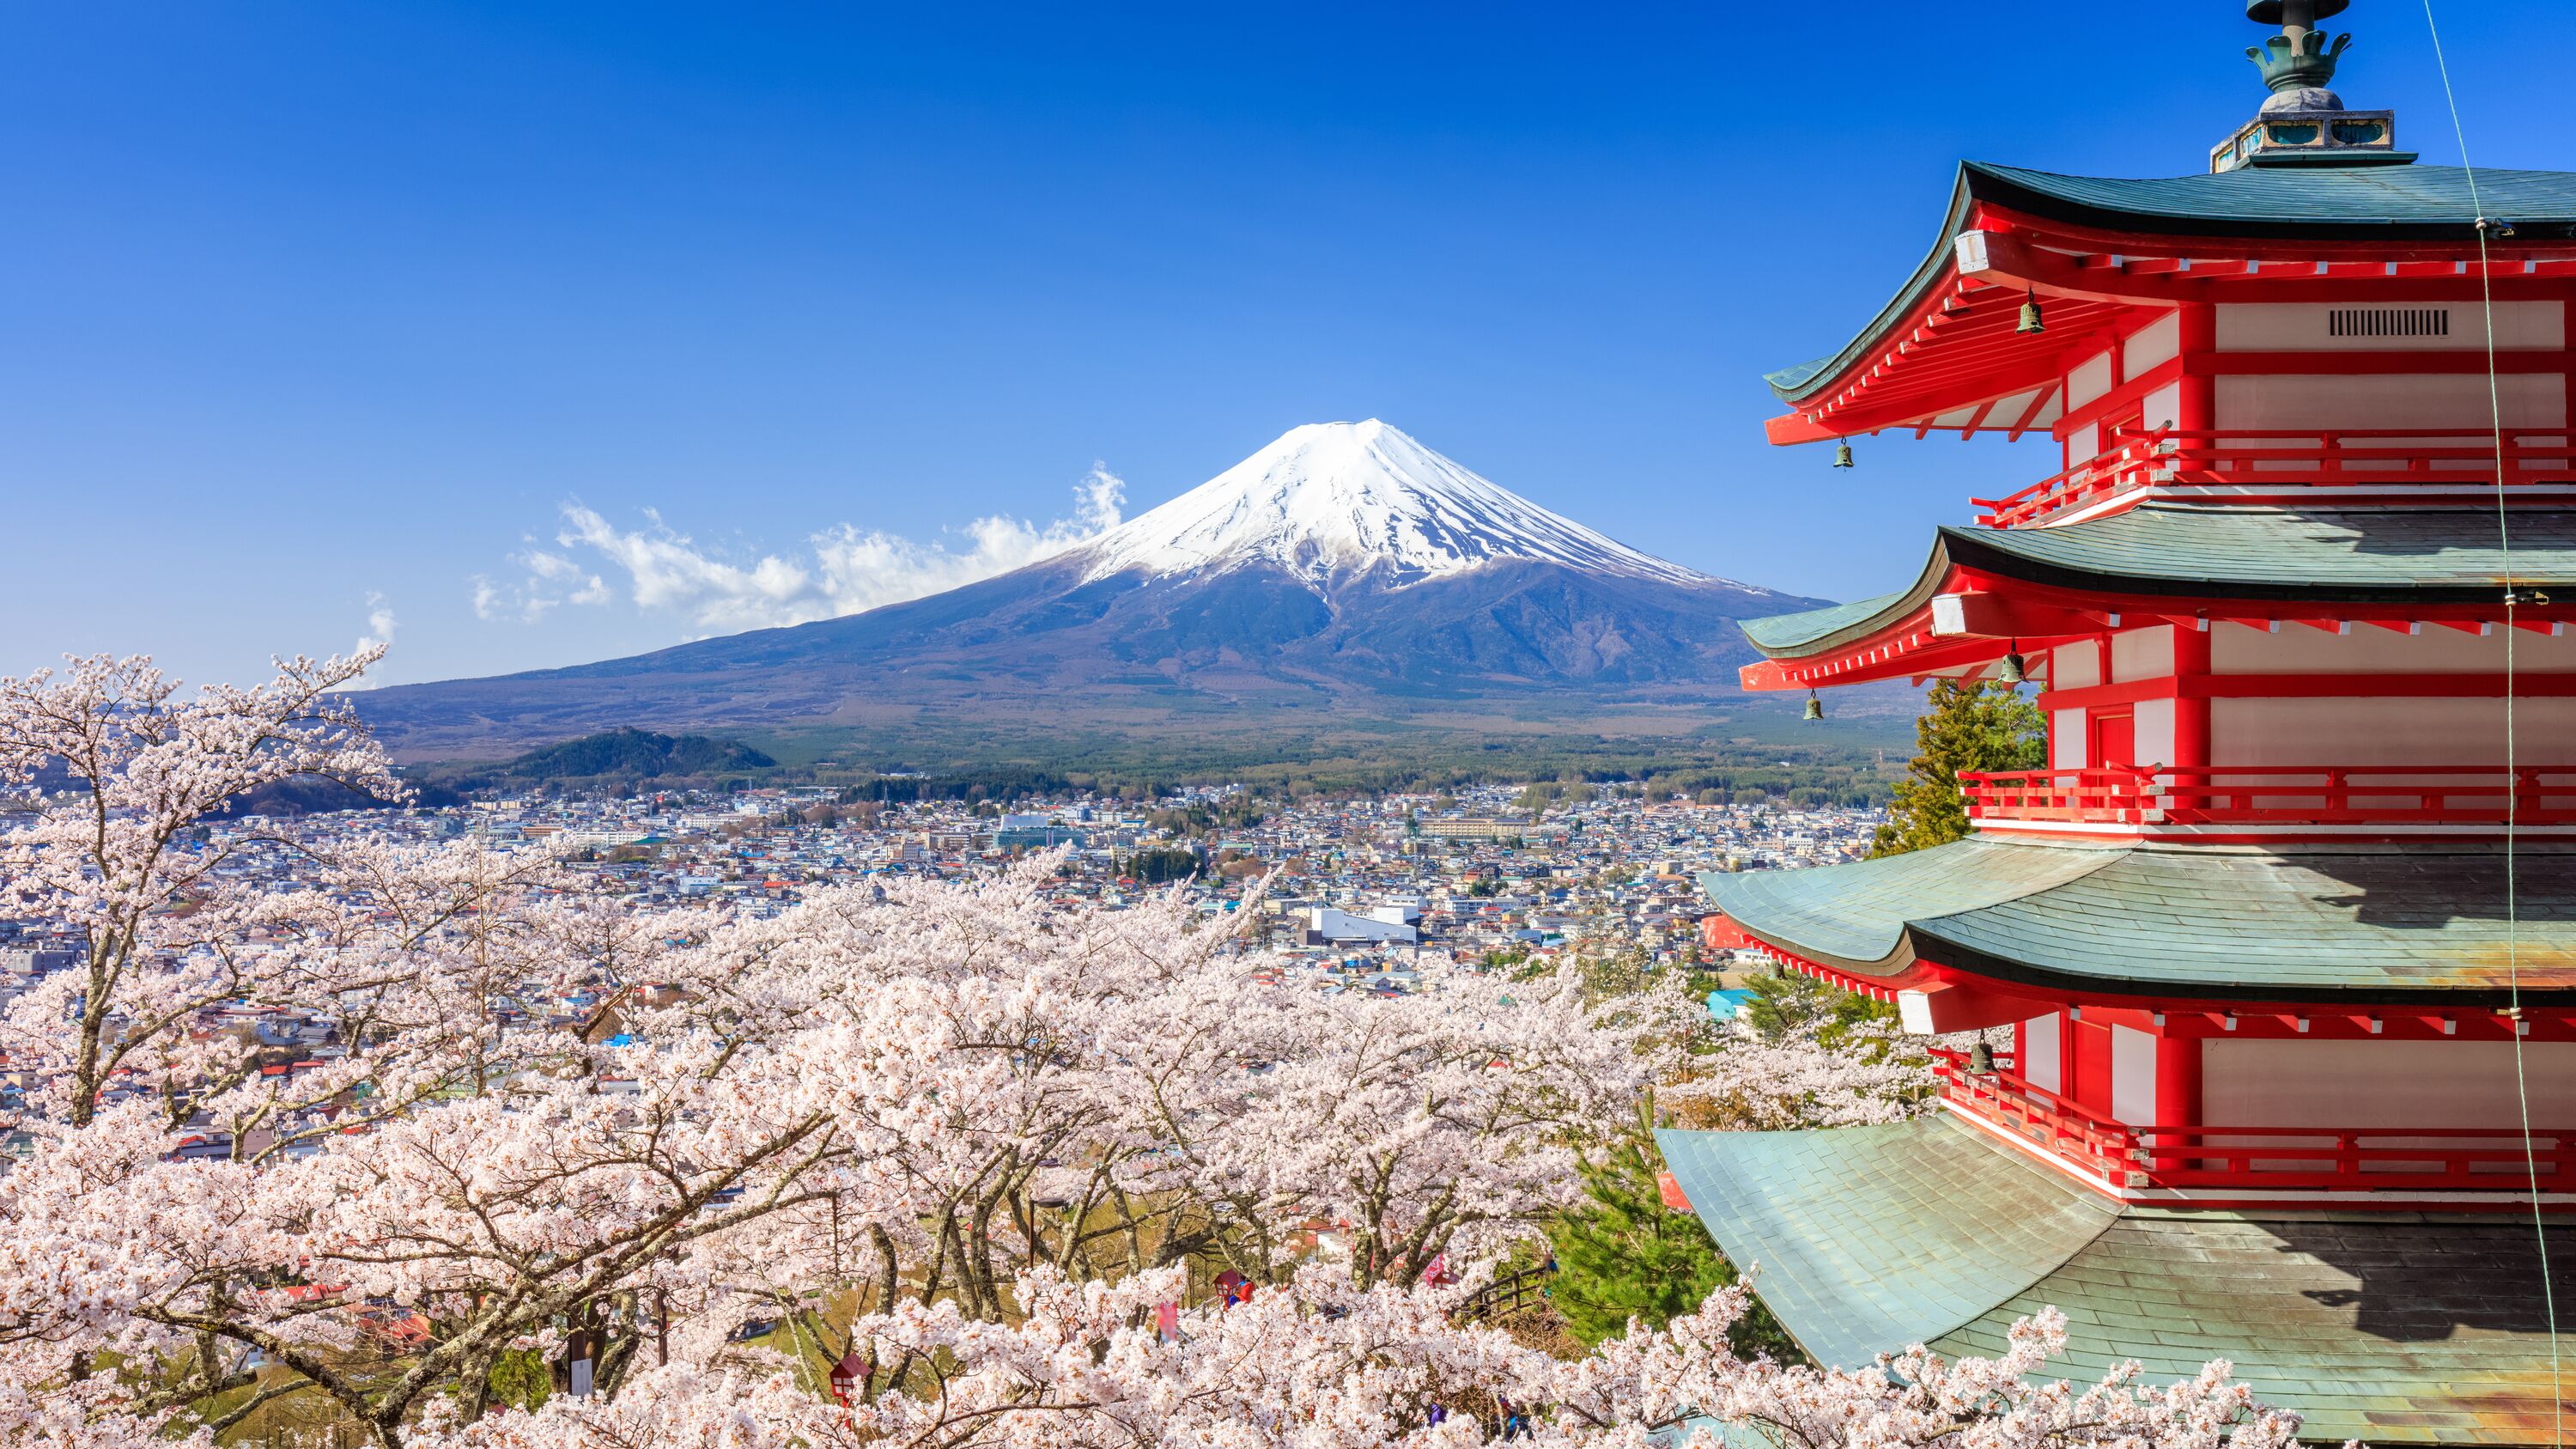 Plunderen Fictief Kader Vakantie Japan? De mooiste Japan reizen! » ANWB